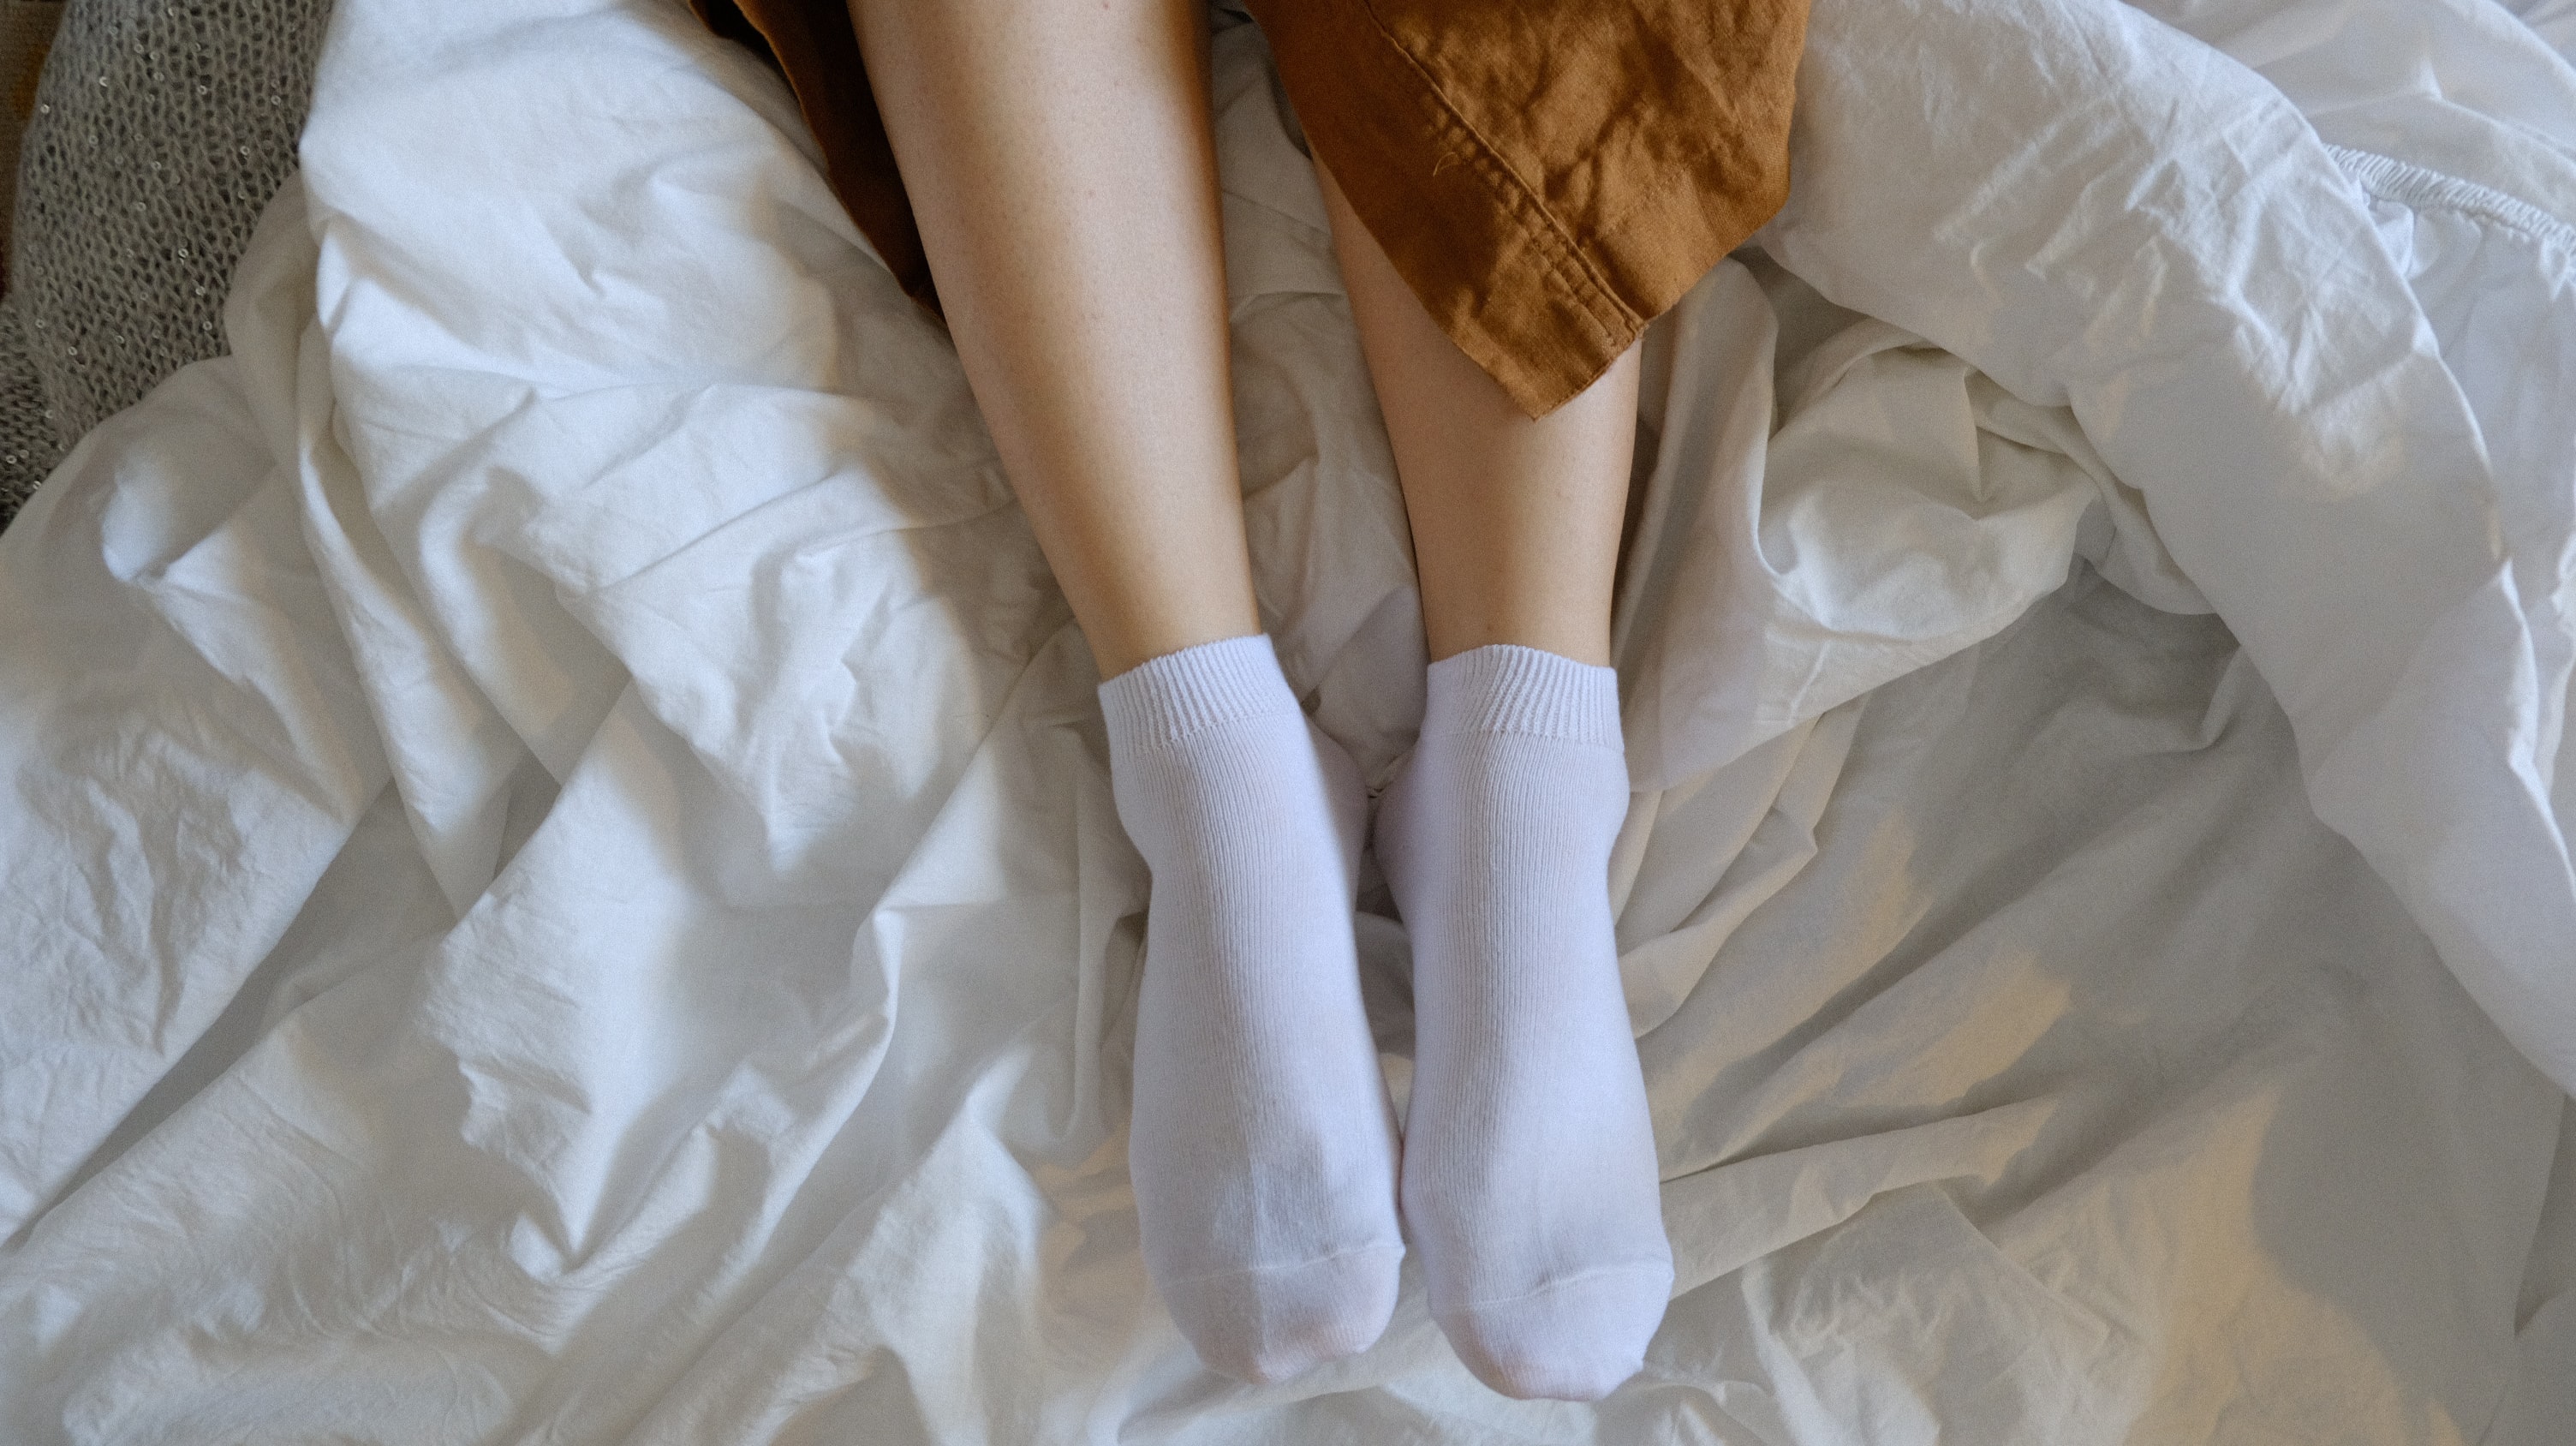 White socks girl. Ножки в носочках. Женские ножки в носочках. Женские ножки в белых носочках. Белые носочки.